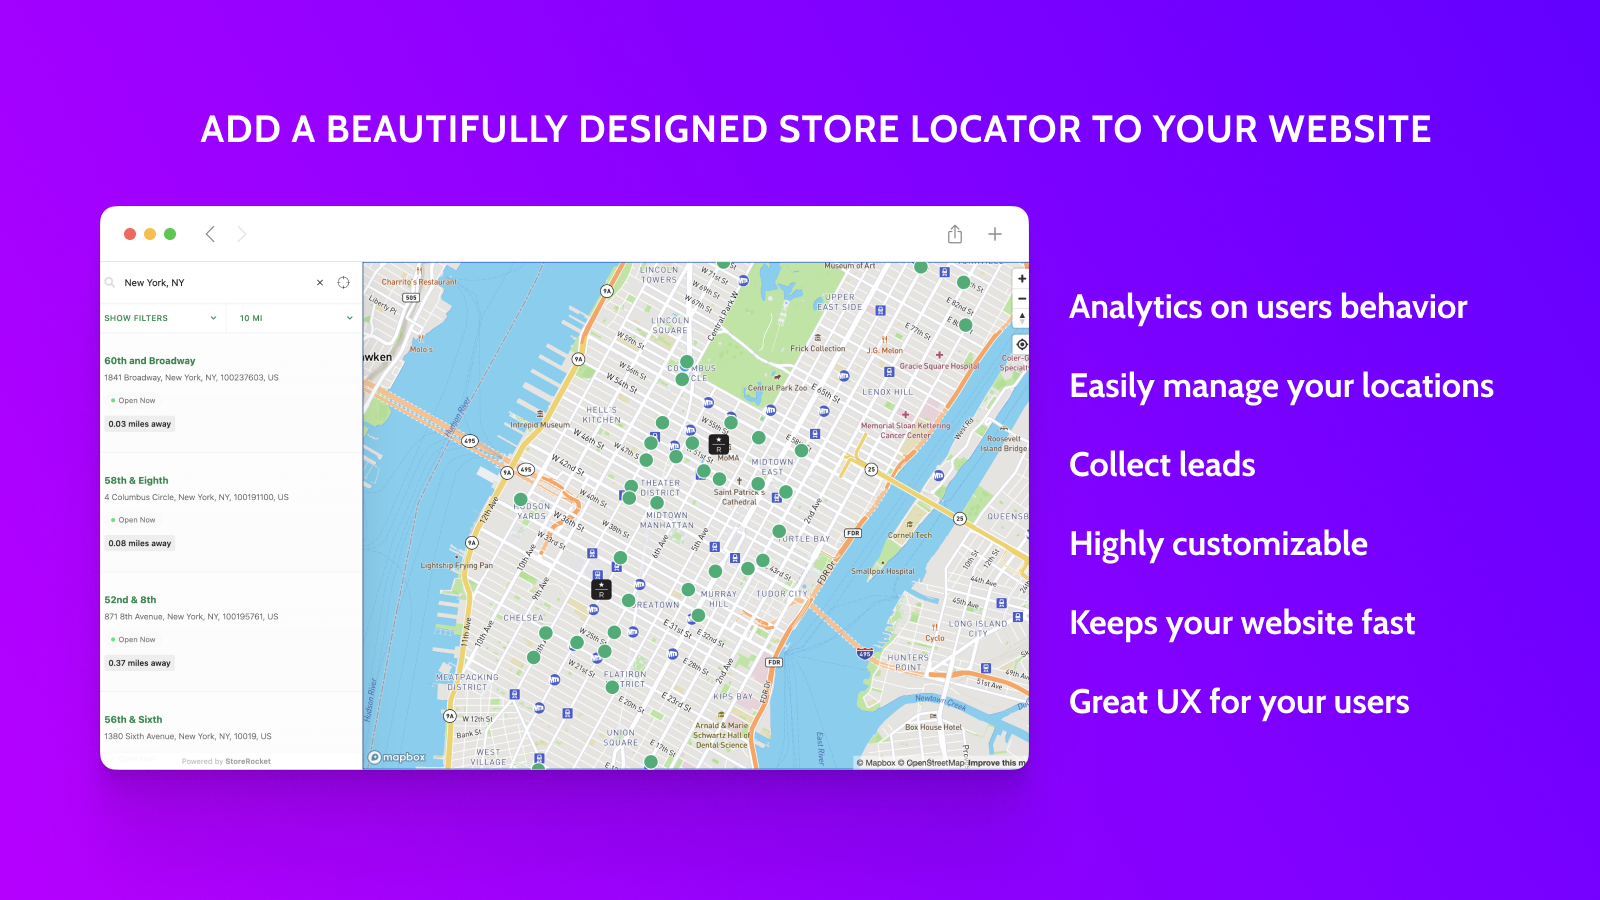 ¡Añade un localizador de tiendas bellamente diseñado a tu sitio web!